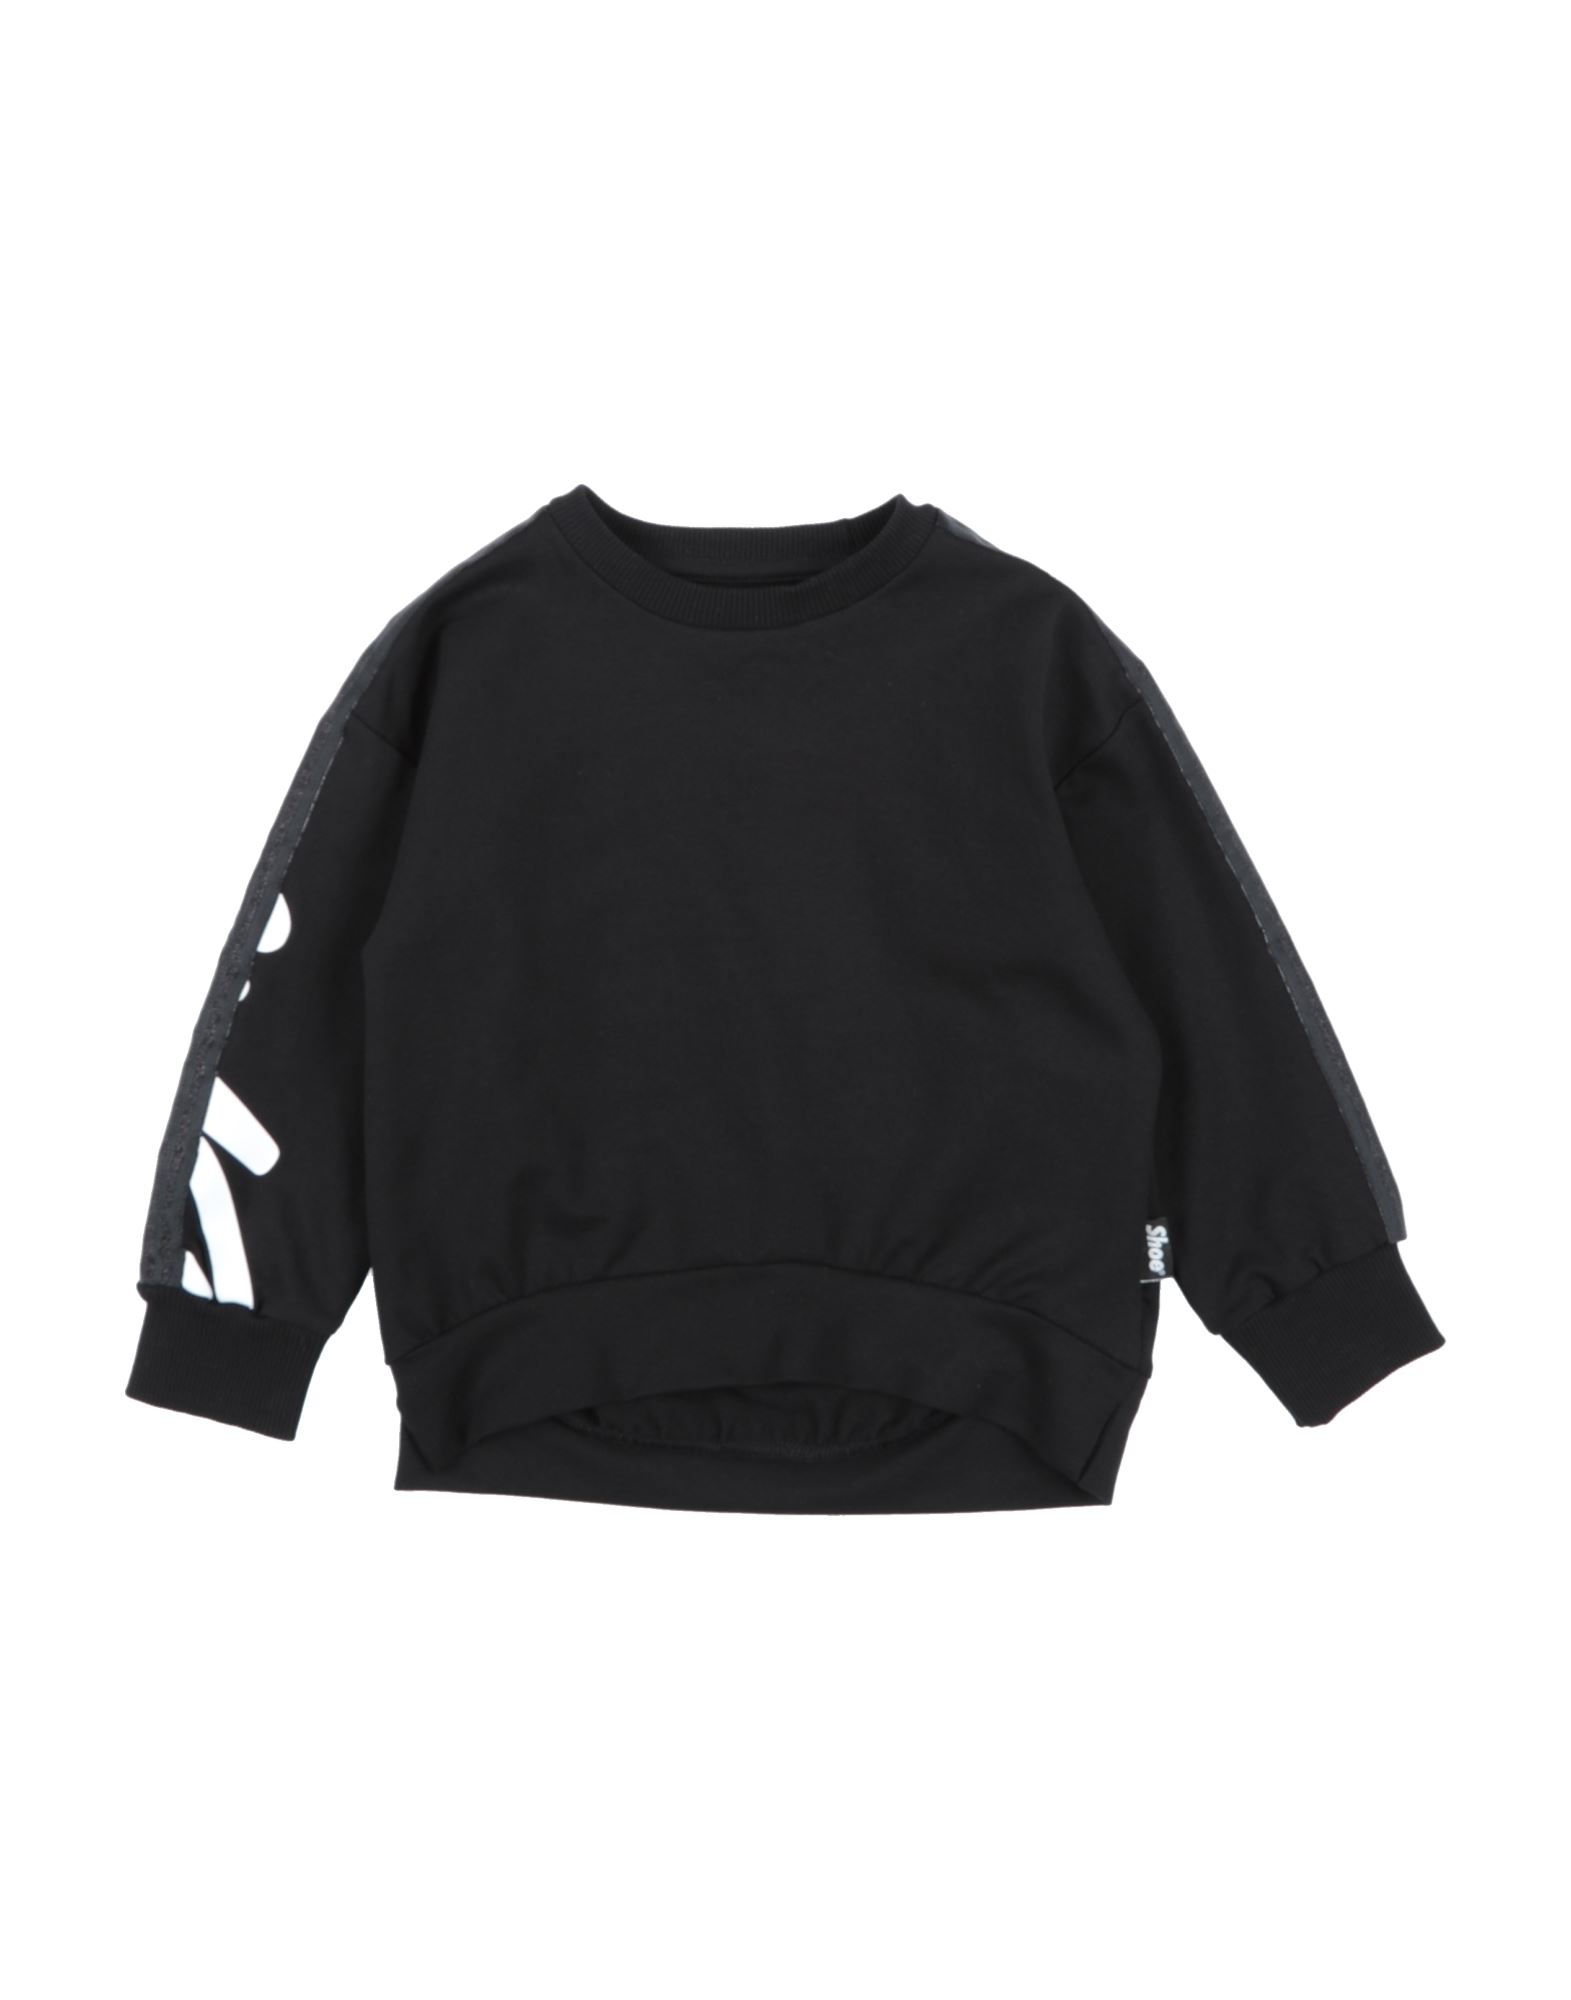 Shoe® Kids' Shoe Toddler Girl Sweatshirt Black Size 4 Cotton, Elastane